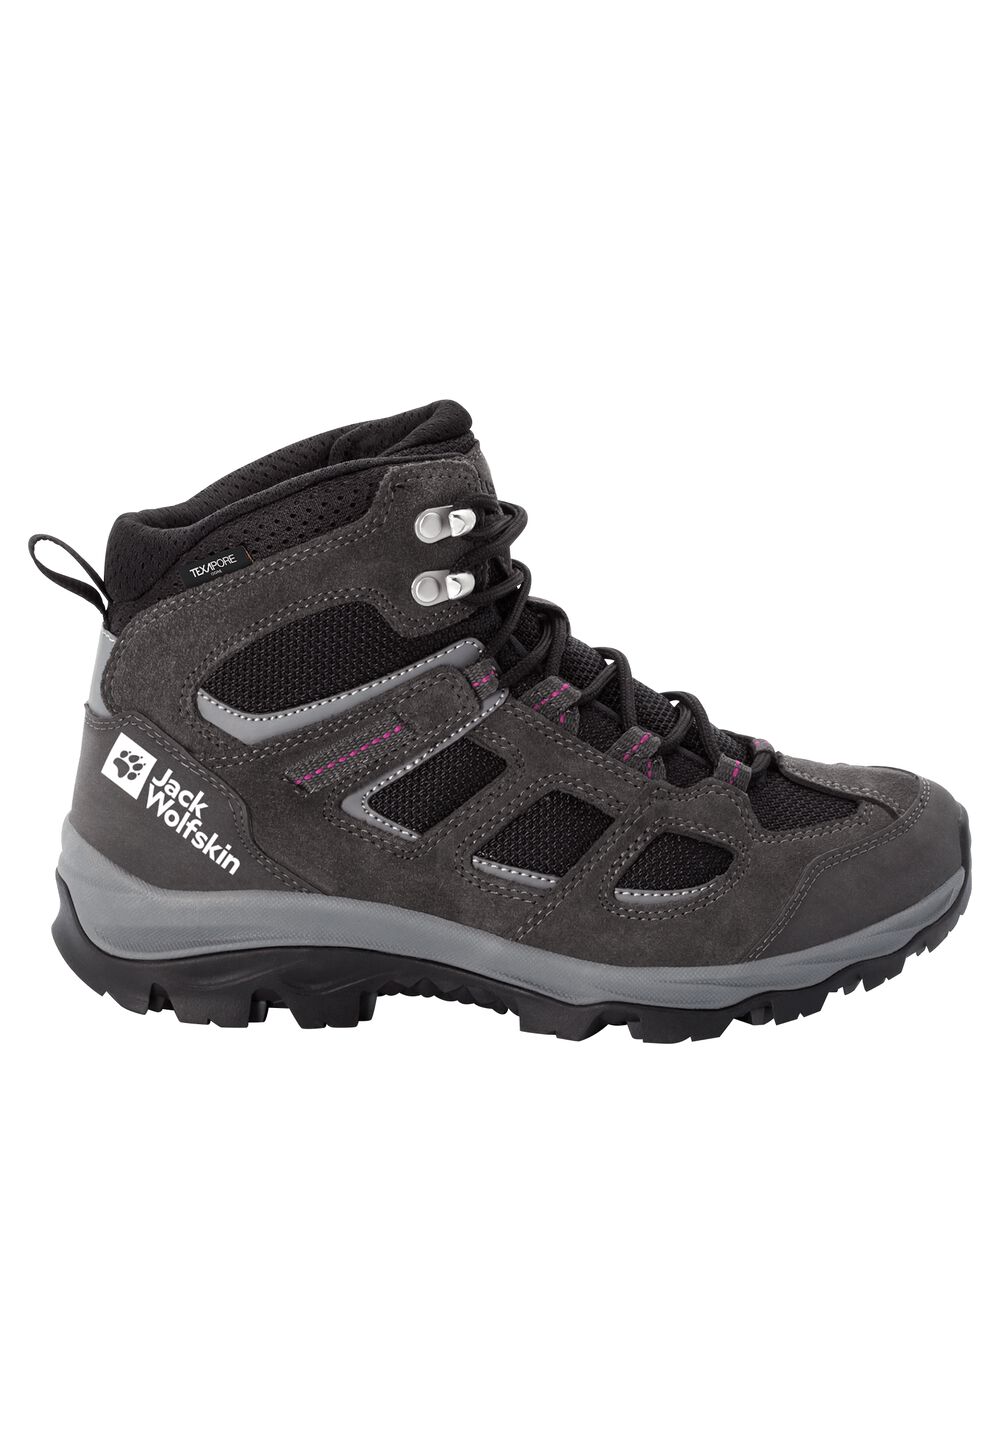 Chaussures de randonnée imperméables femmes Vojo 3 Texapore Mid Women 7,5 gris dark steel / purple